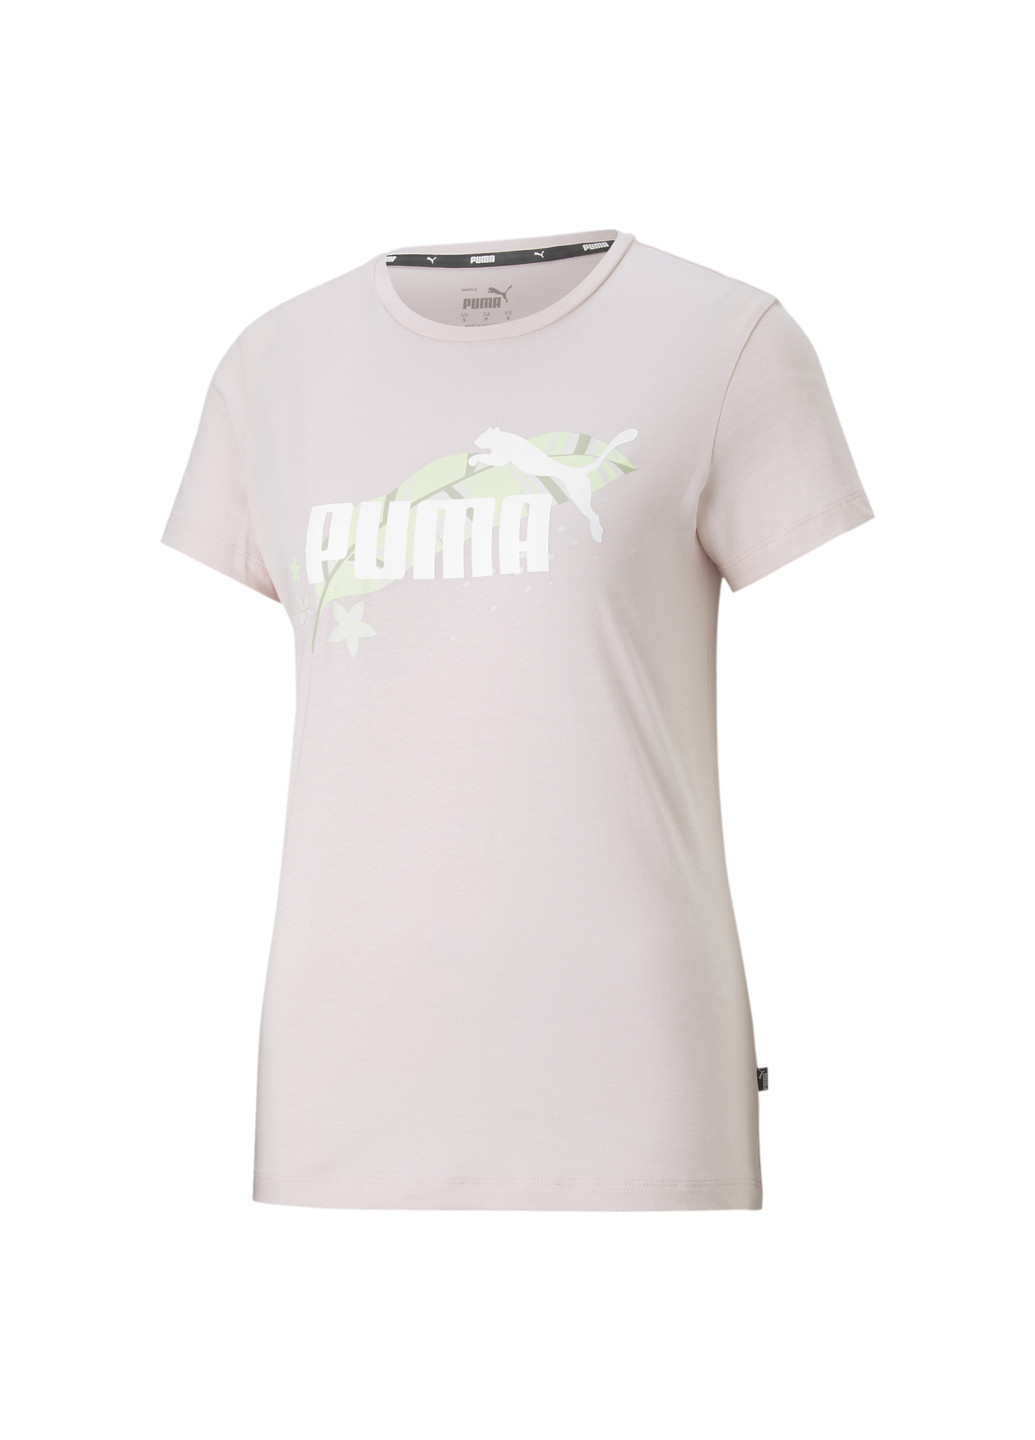 Футболка FLORAL VIBES Graphic Tee Puma однотонная розовая спортивная хлопок